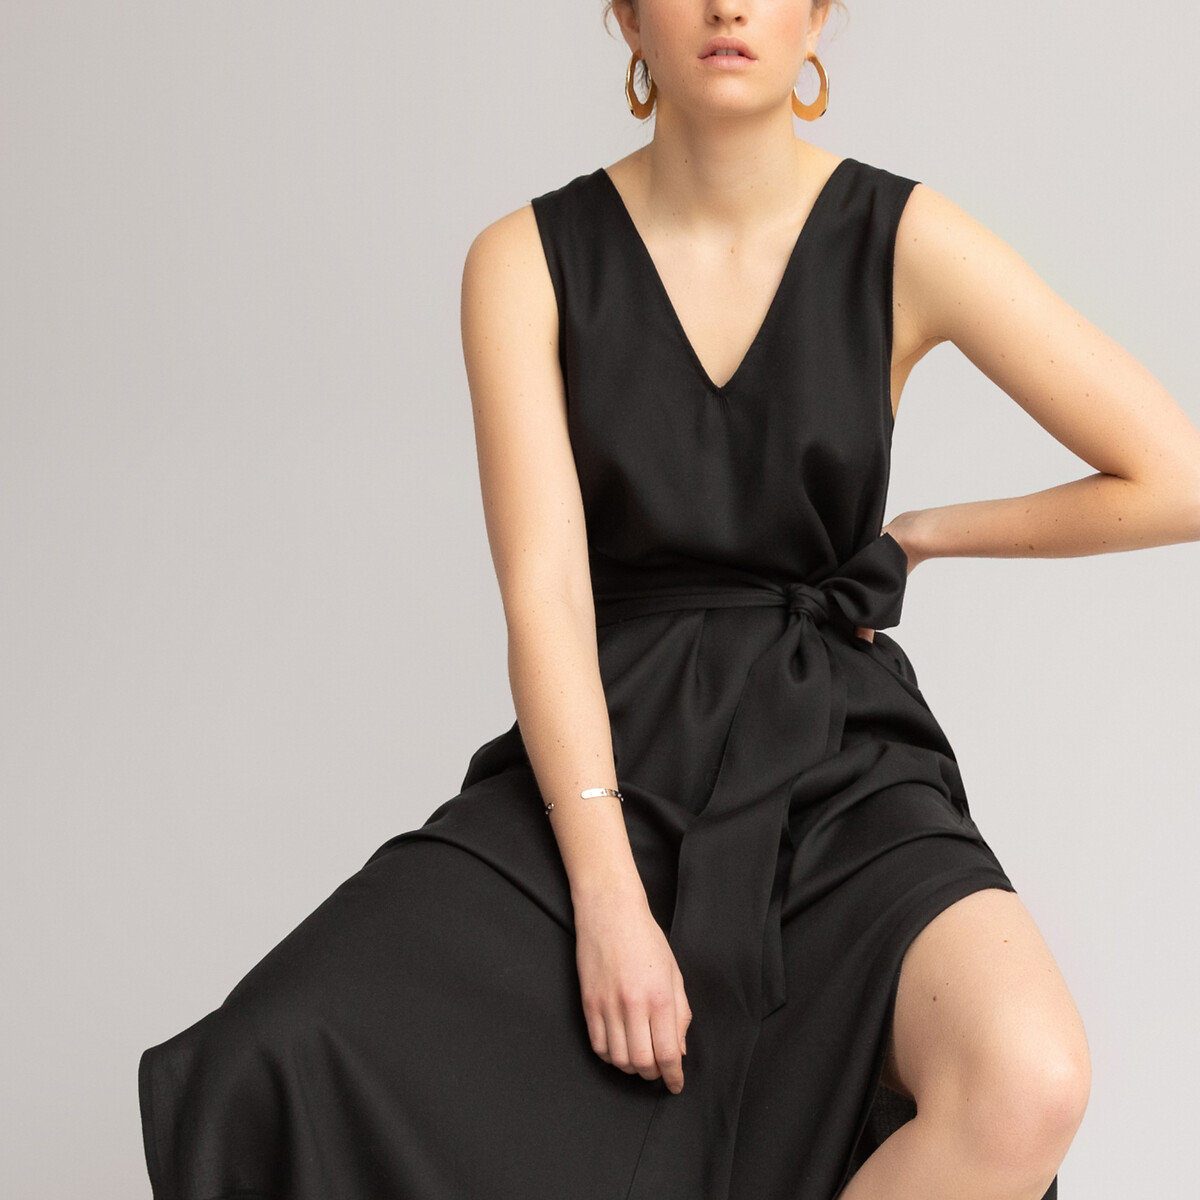 Платье LaRedoute Расклешенное из лиоцелла длинное без рукавов 48 (FR) - 54 (RUS) черный, размер 48 (FR) - 54 (RUS) Расклешенное из лиоцелла длинное без рукавов 48 (FR) - 54 (RUS) черный - фото 1